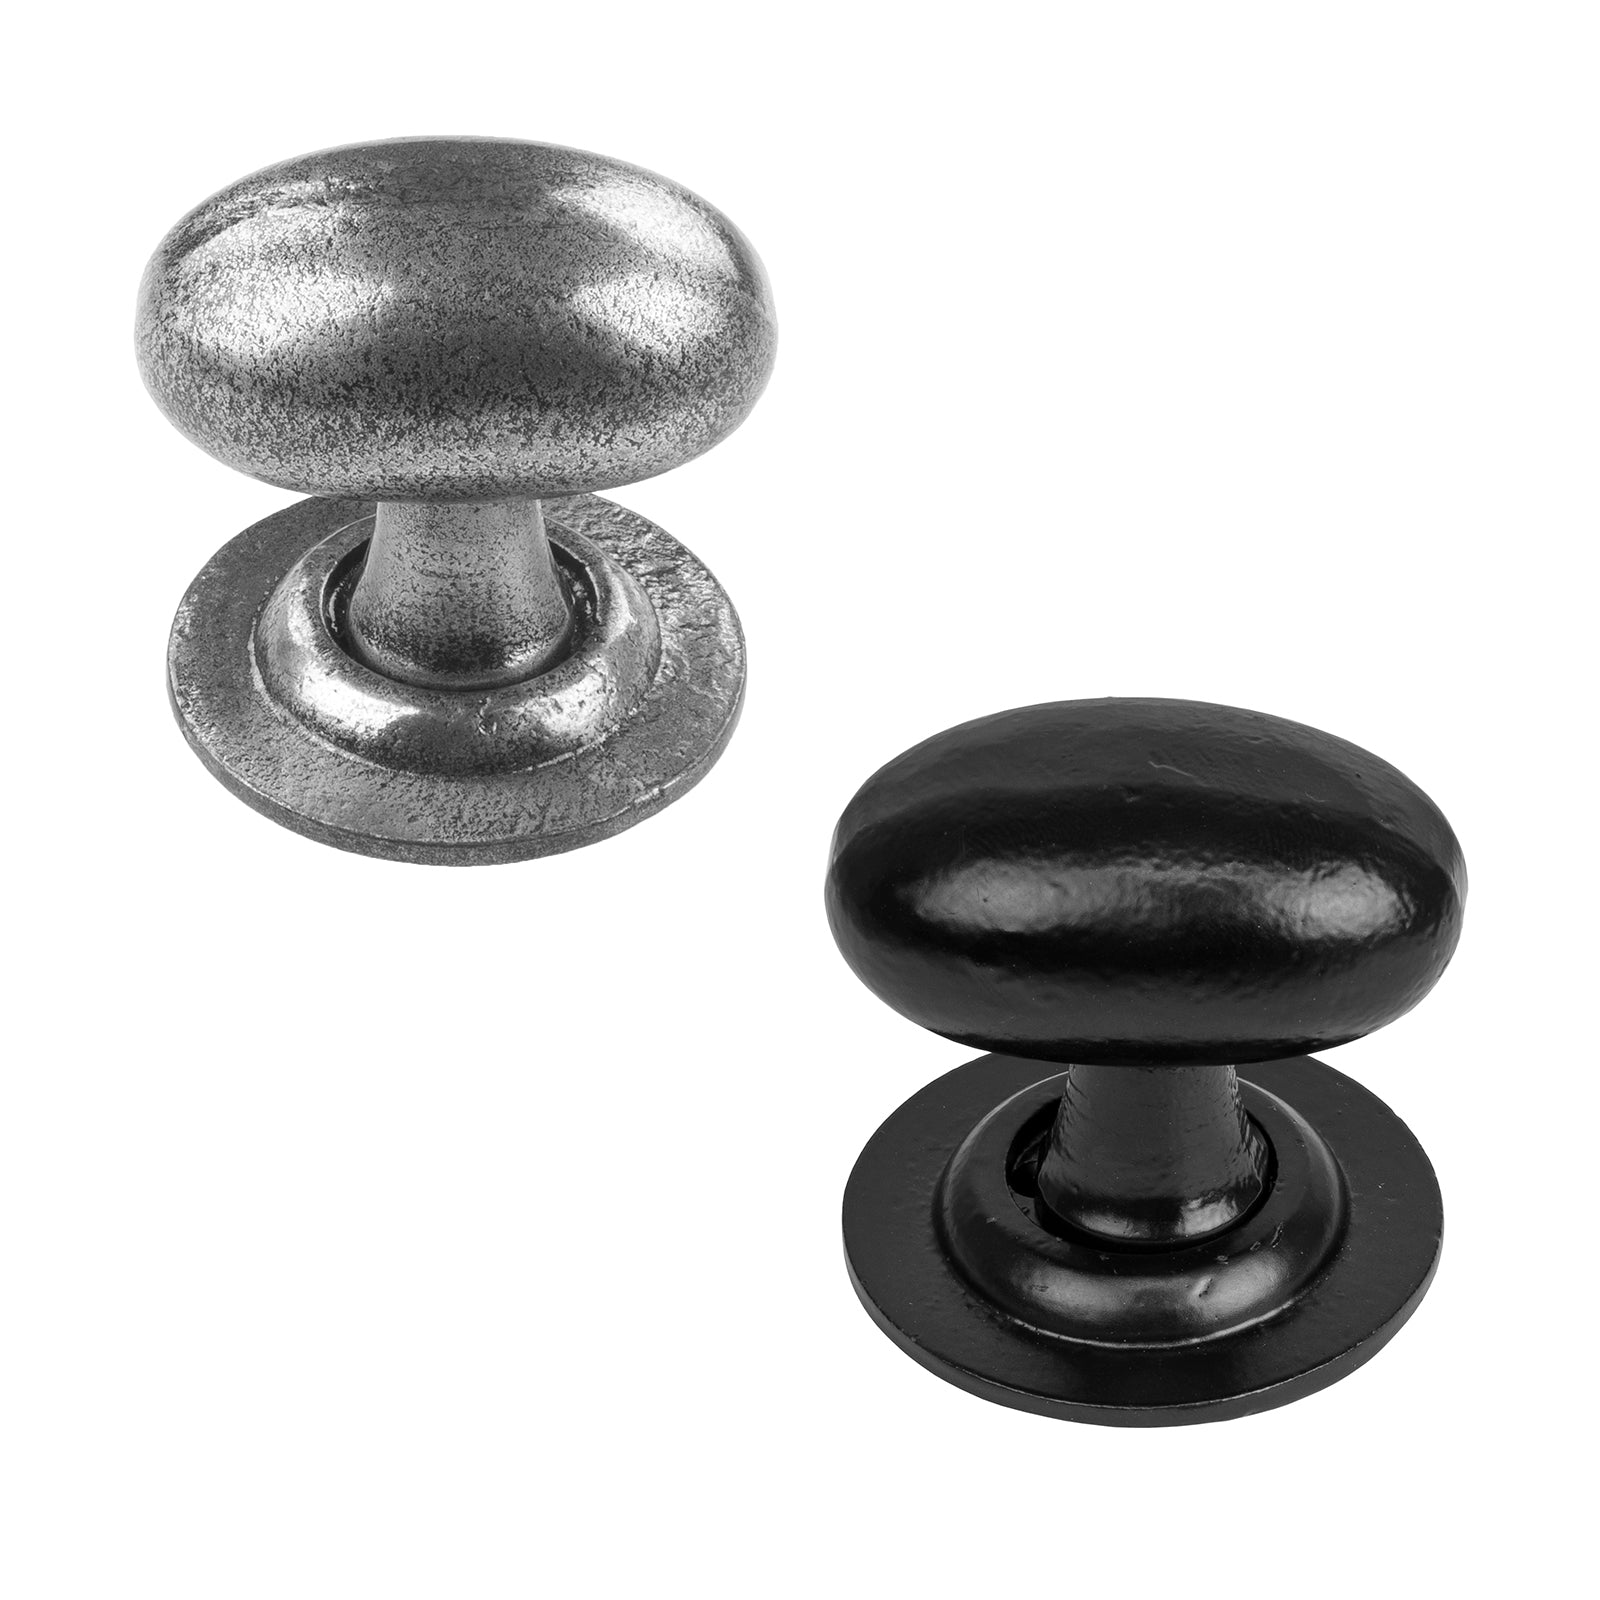 Oval cast iron door knobs also known as oval door handles